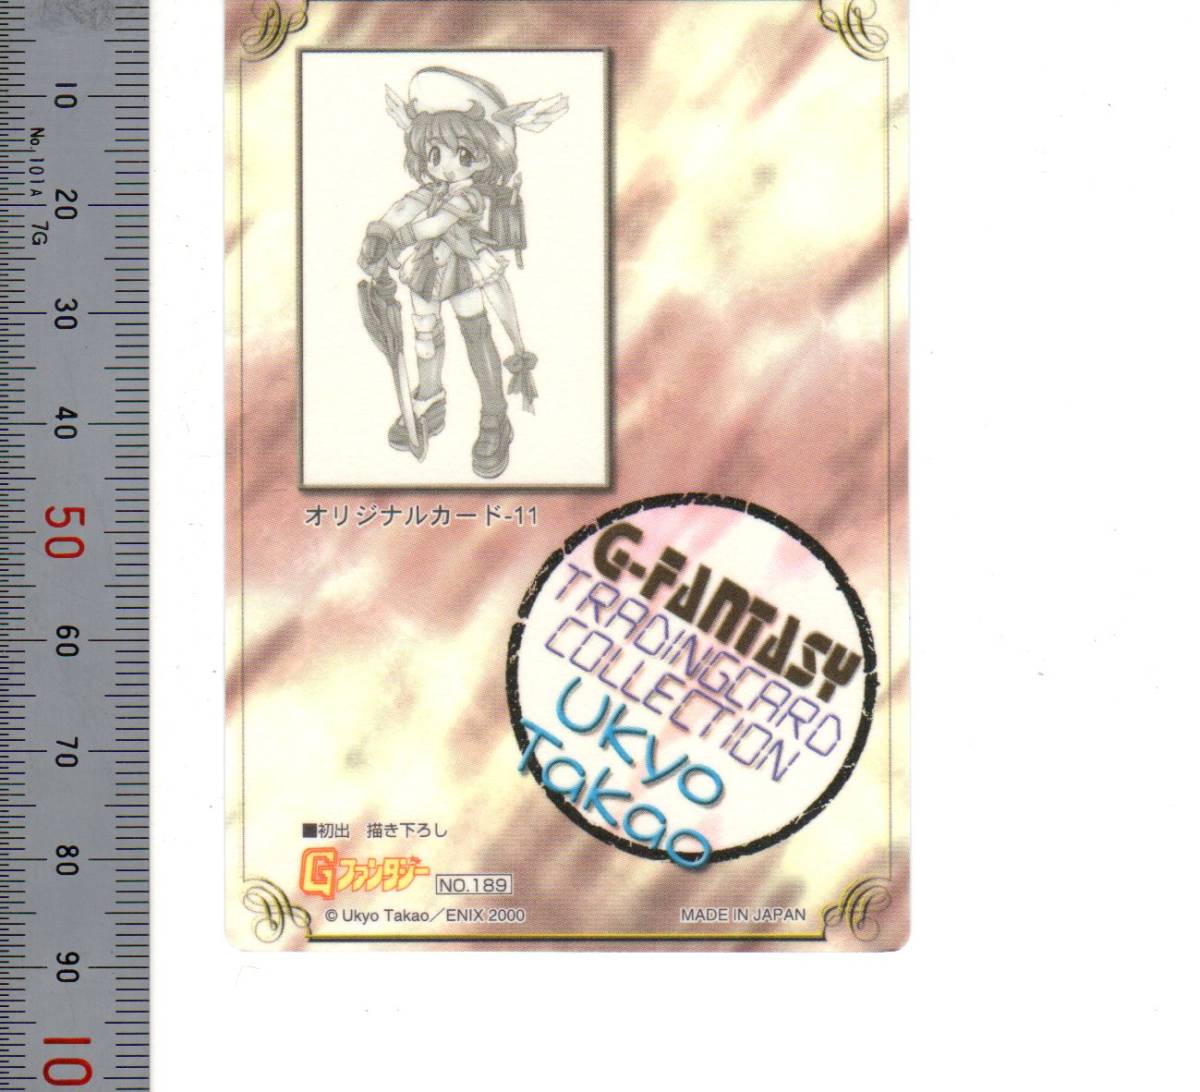 「No.189 Ukyo Takao オリジナルカード-11 Gファンタジー」ENIX 2000(大きさ トレーディングカード) 送料無料 「熊五郎のトレカ」00900815_画像2